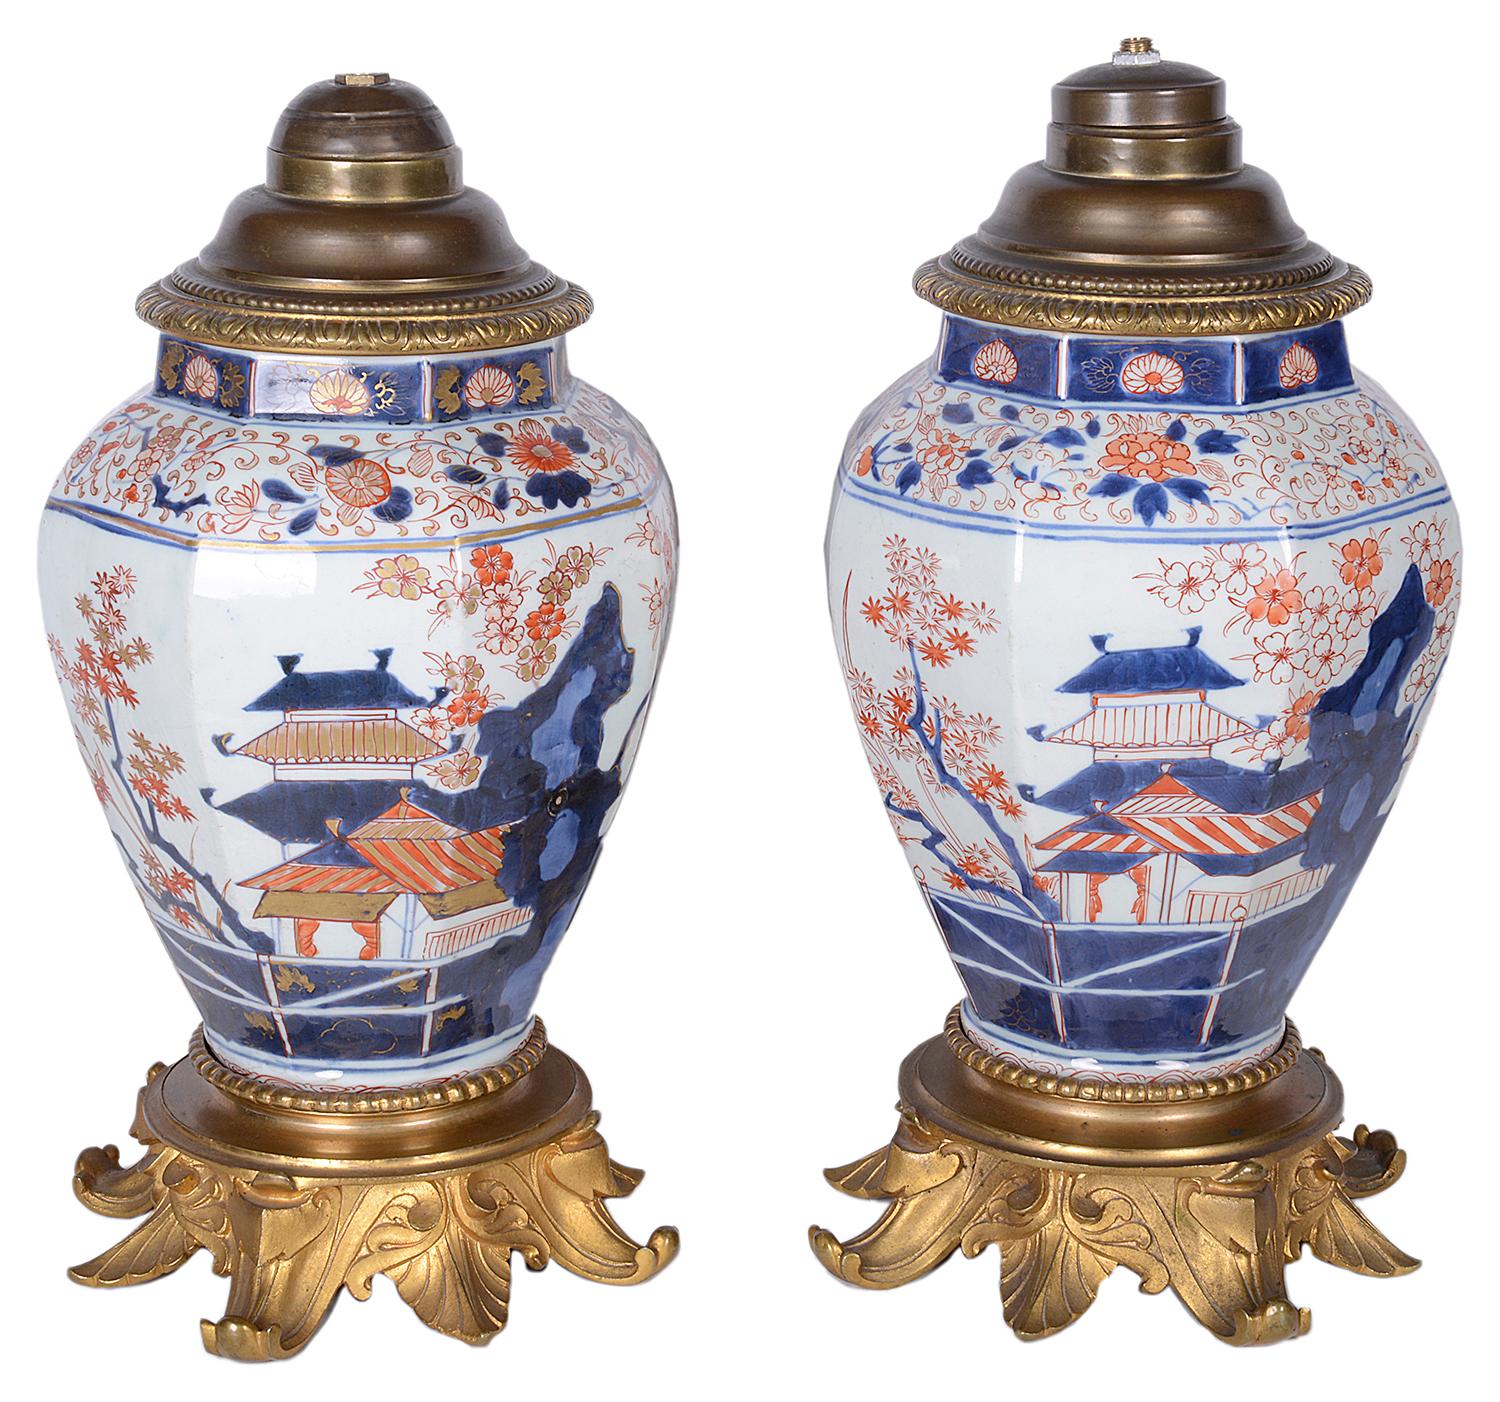 Paire de vases / lampes Imari japonais de la fin du 18e siècle de bonne qualité. Chacune est ornée d'une pagode classique, de fleurs et d'oiseaux exotiques, et repose sur des bases en bronze doré.